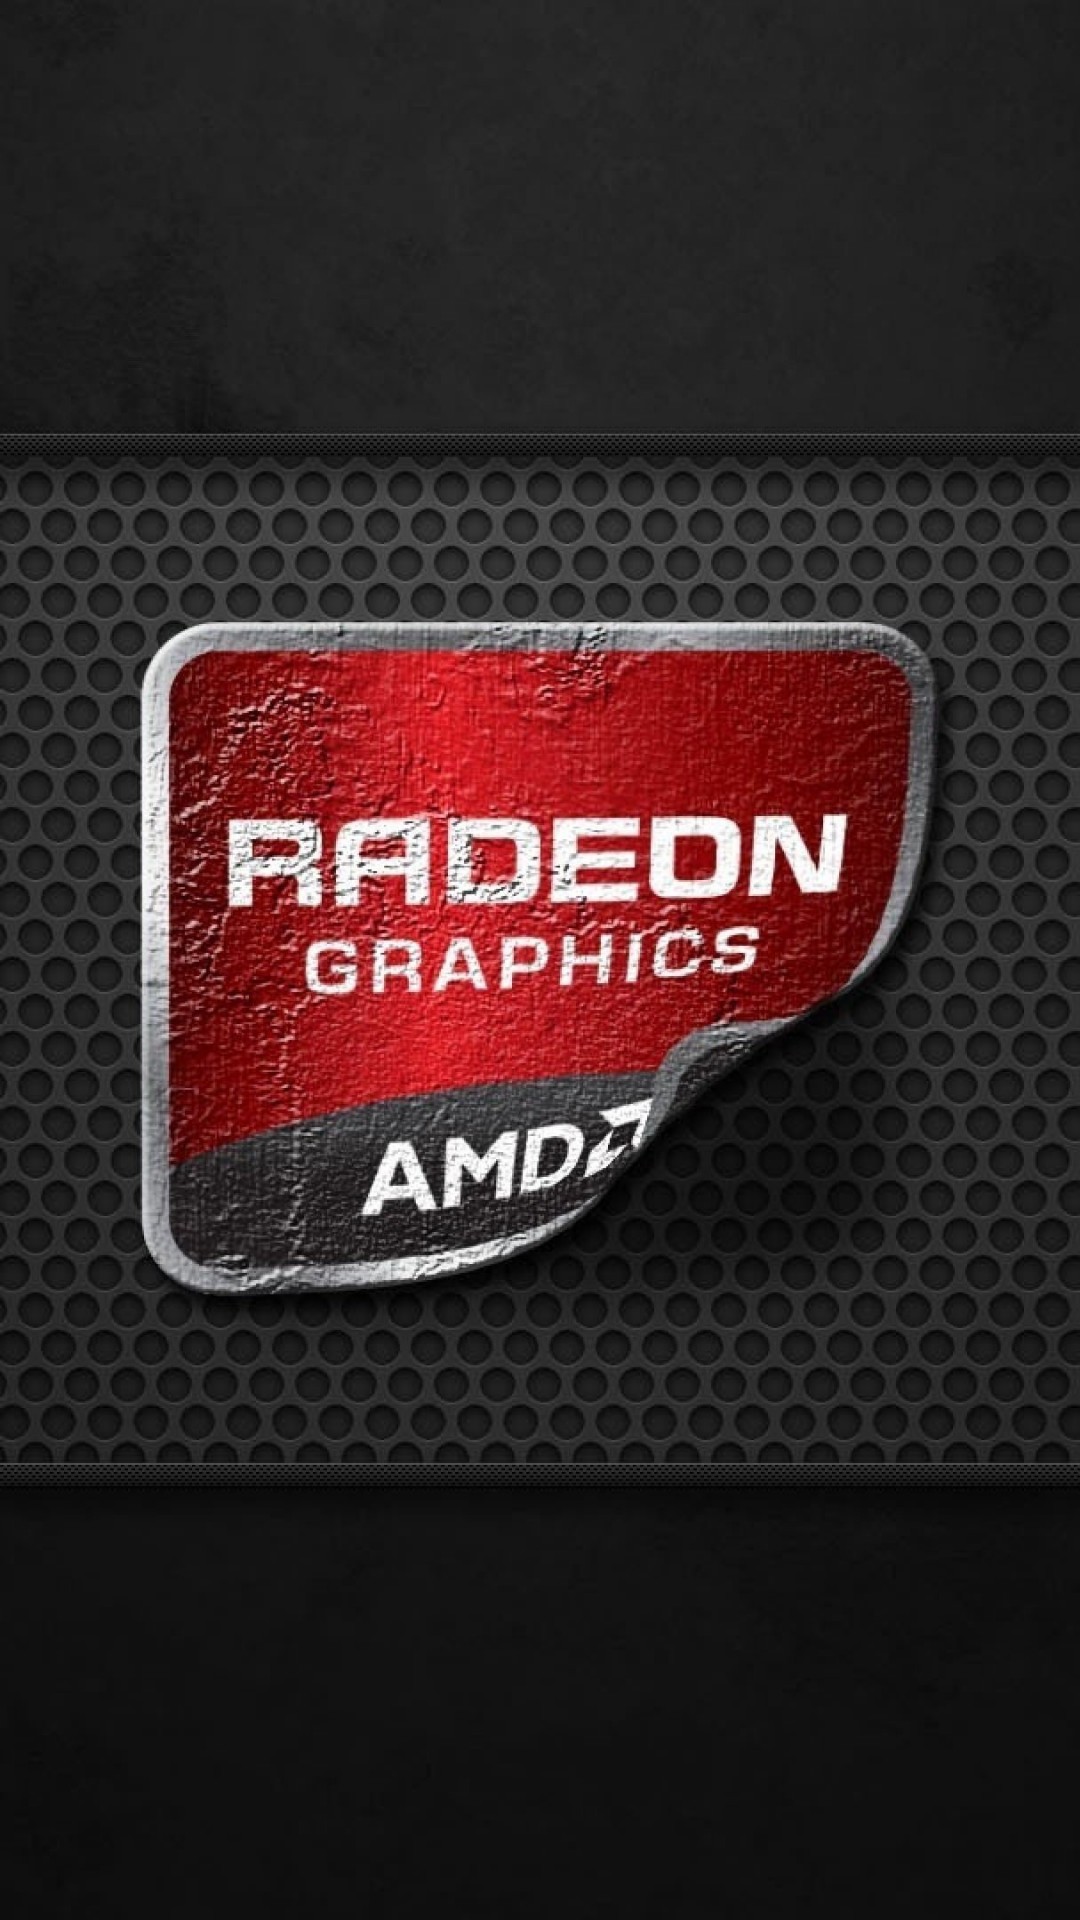 AMD Radeon Graphics Wallpaper for Google Nexus 5